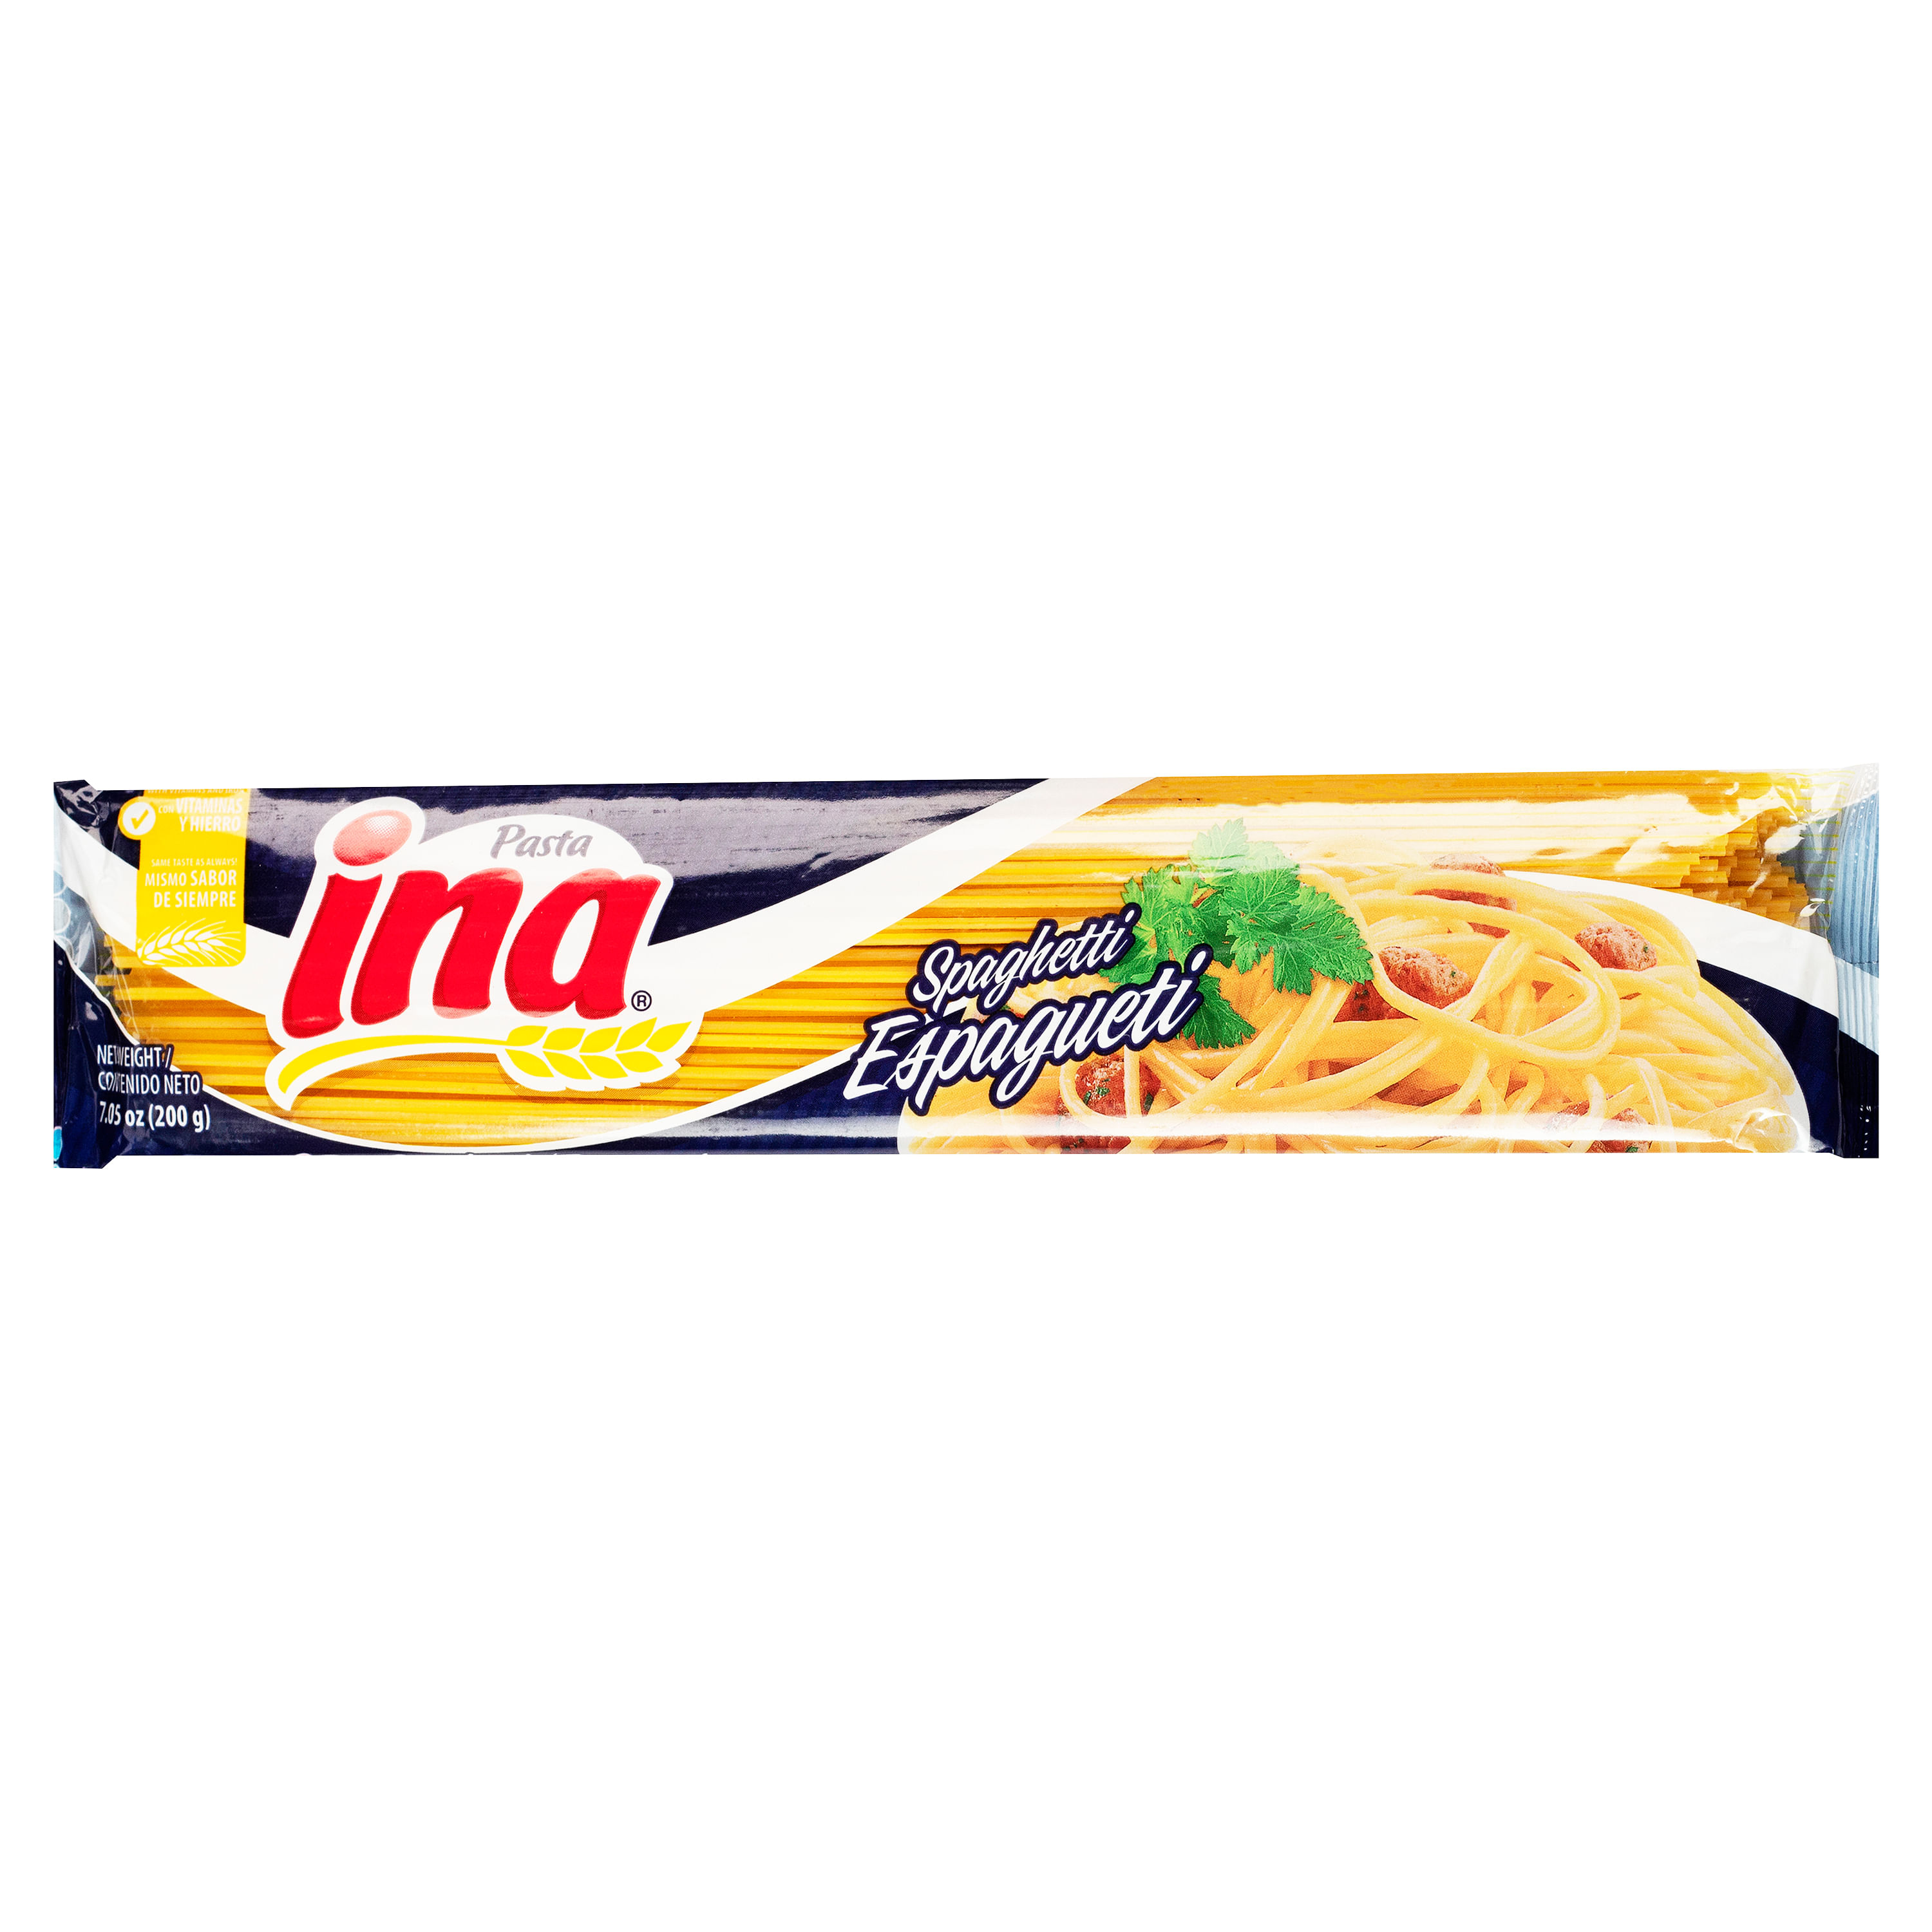 Pasta-larga-Ina-Espagueti-200gr-1-3251